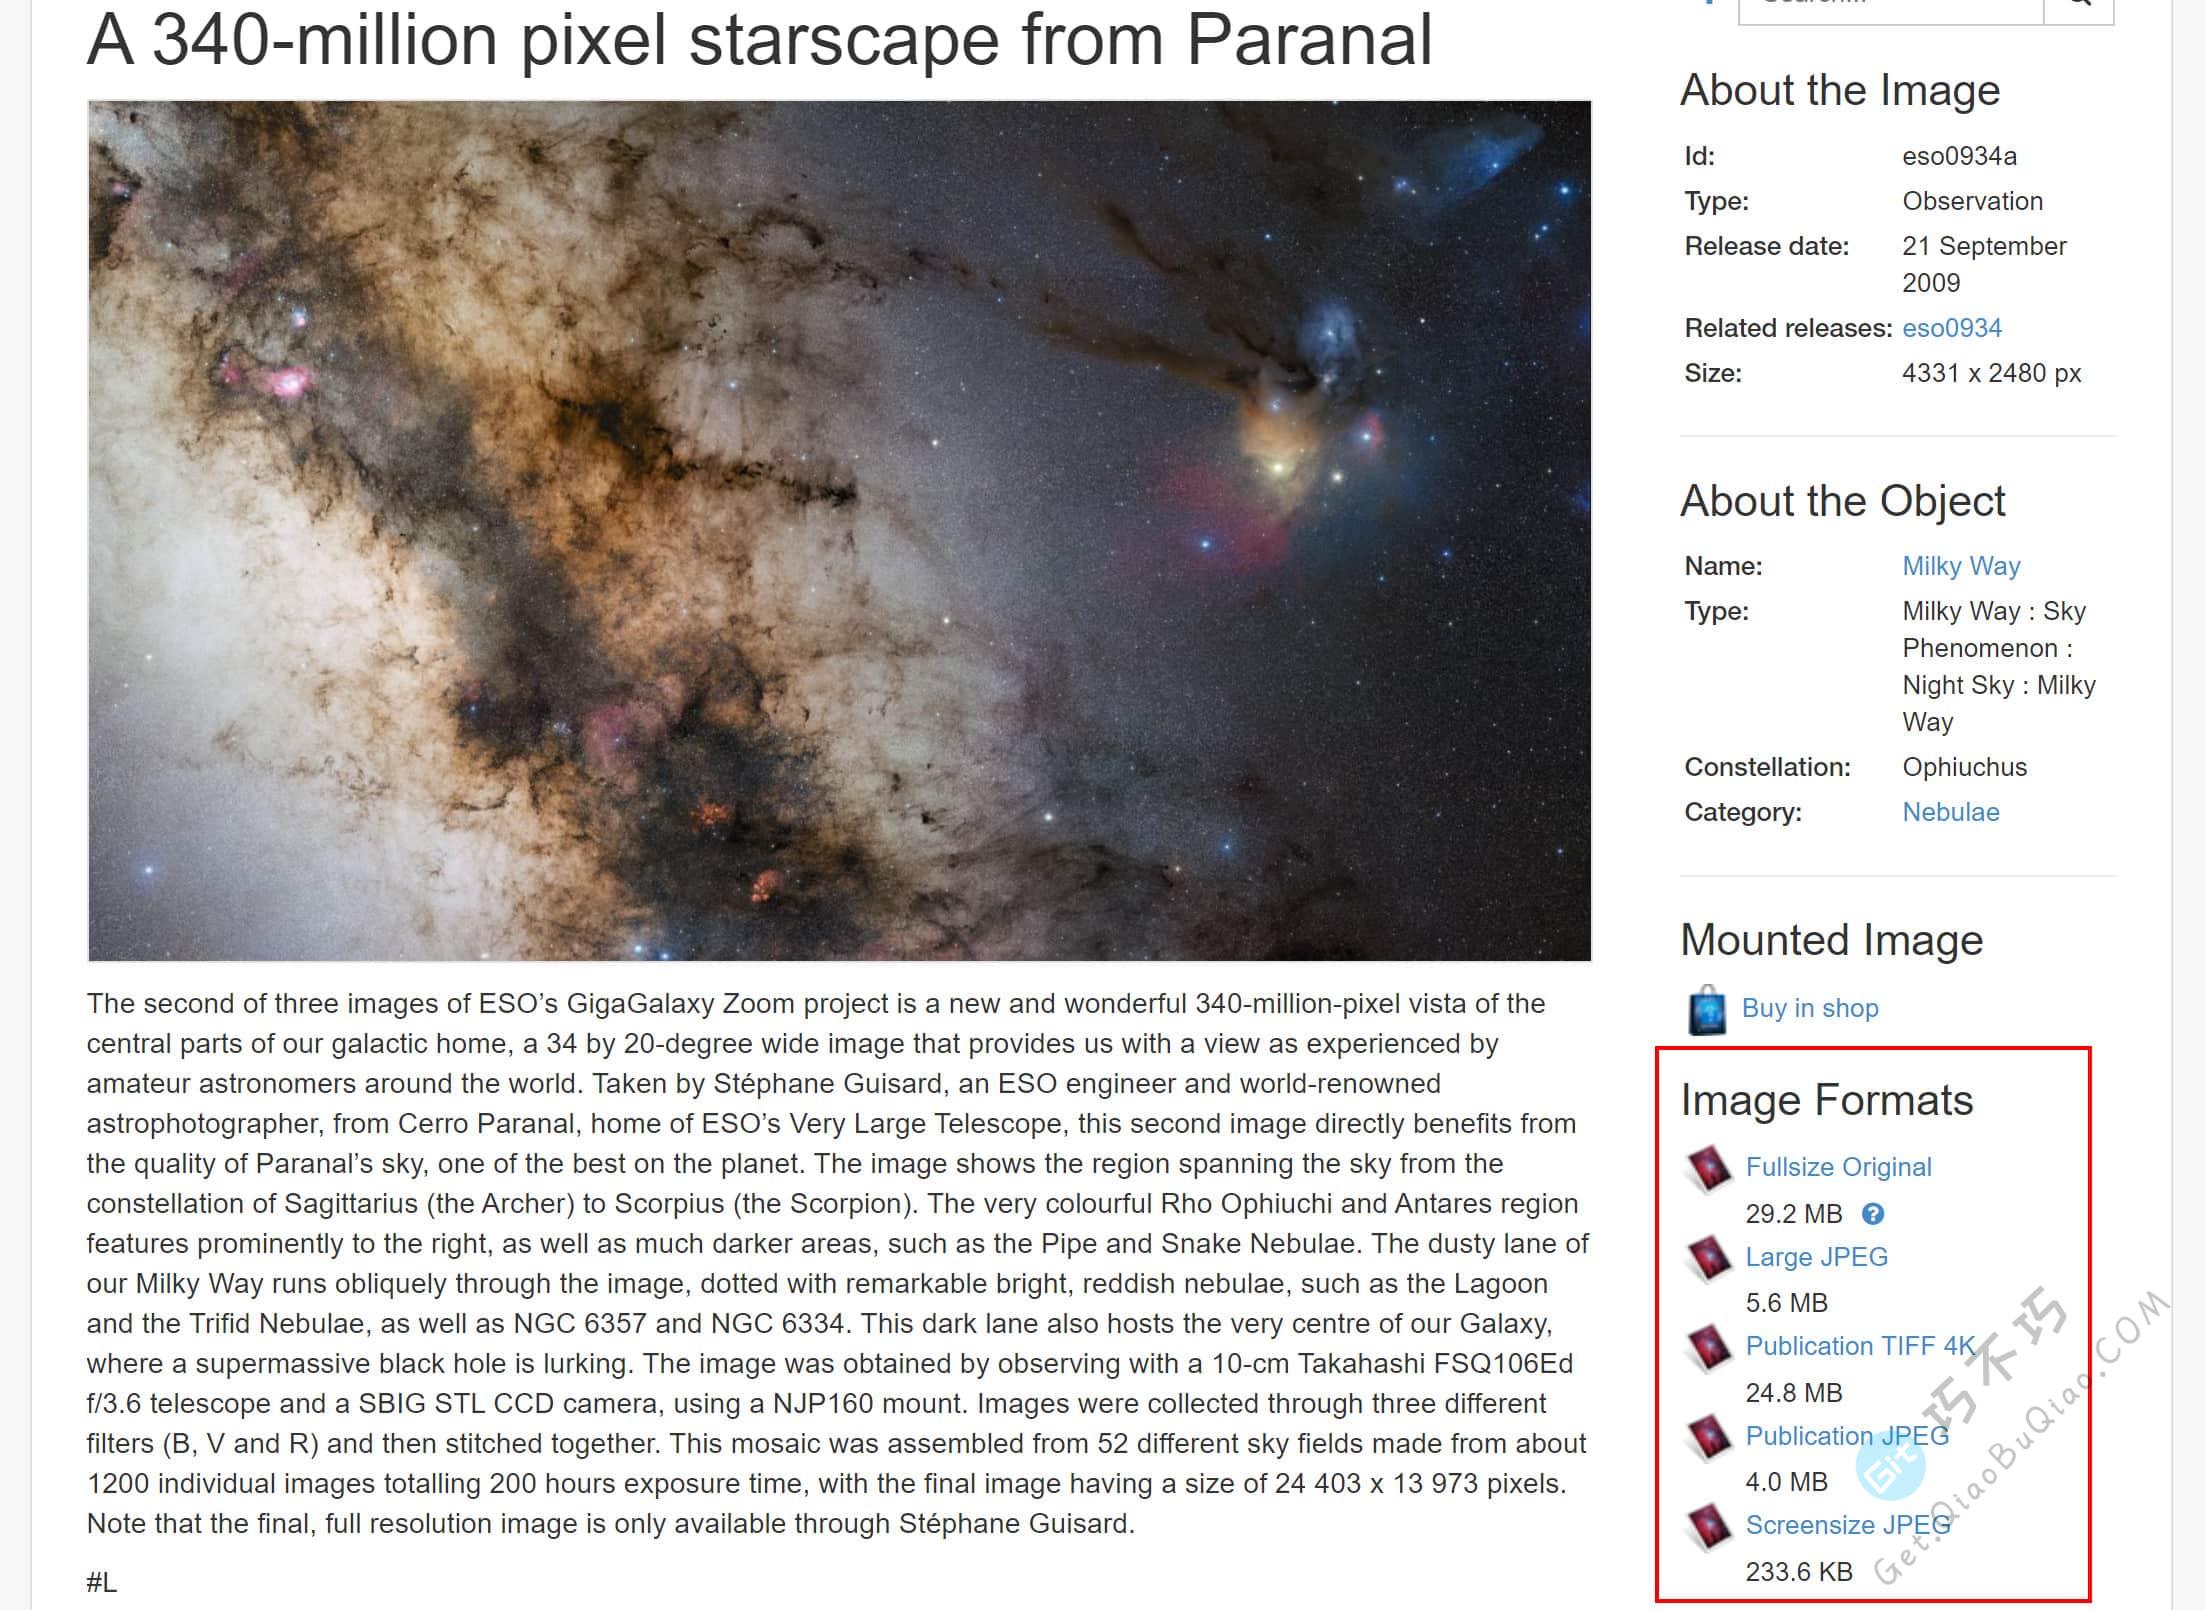 这可能是地球最强大的天文太空图片素材网站了，这里有美丽的星辰